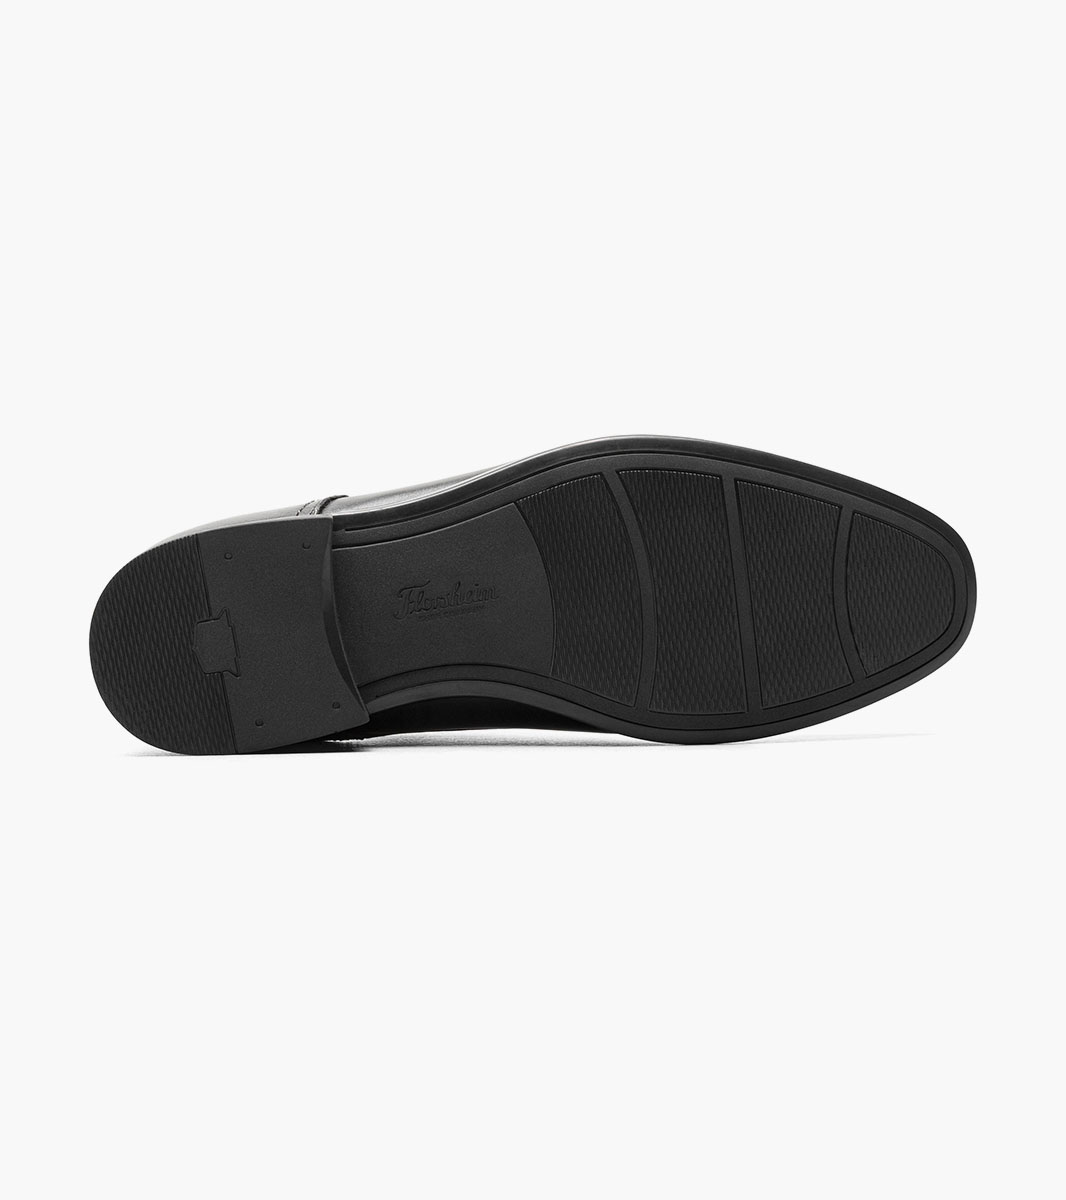 Zaffiro Cap Toe Oxford Newest Shoes | Florsheim.com